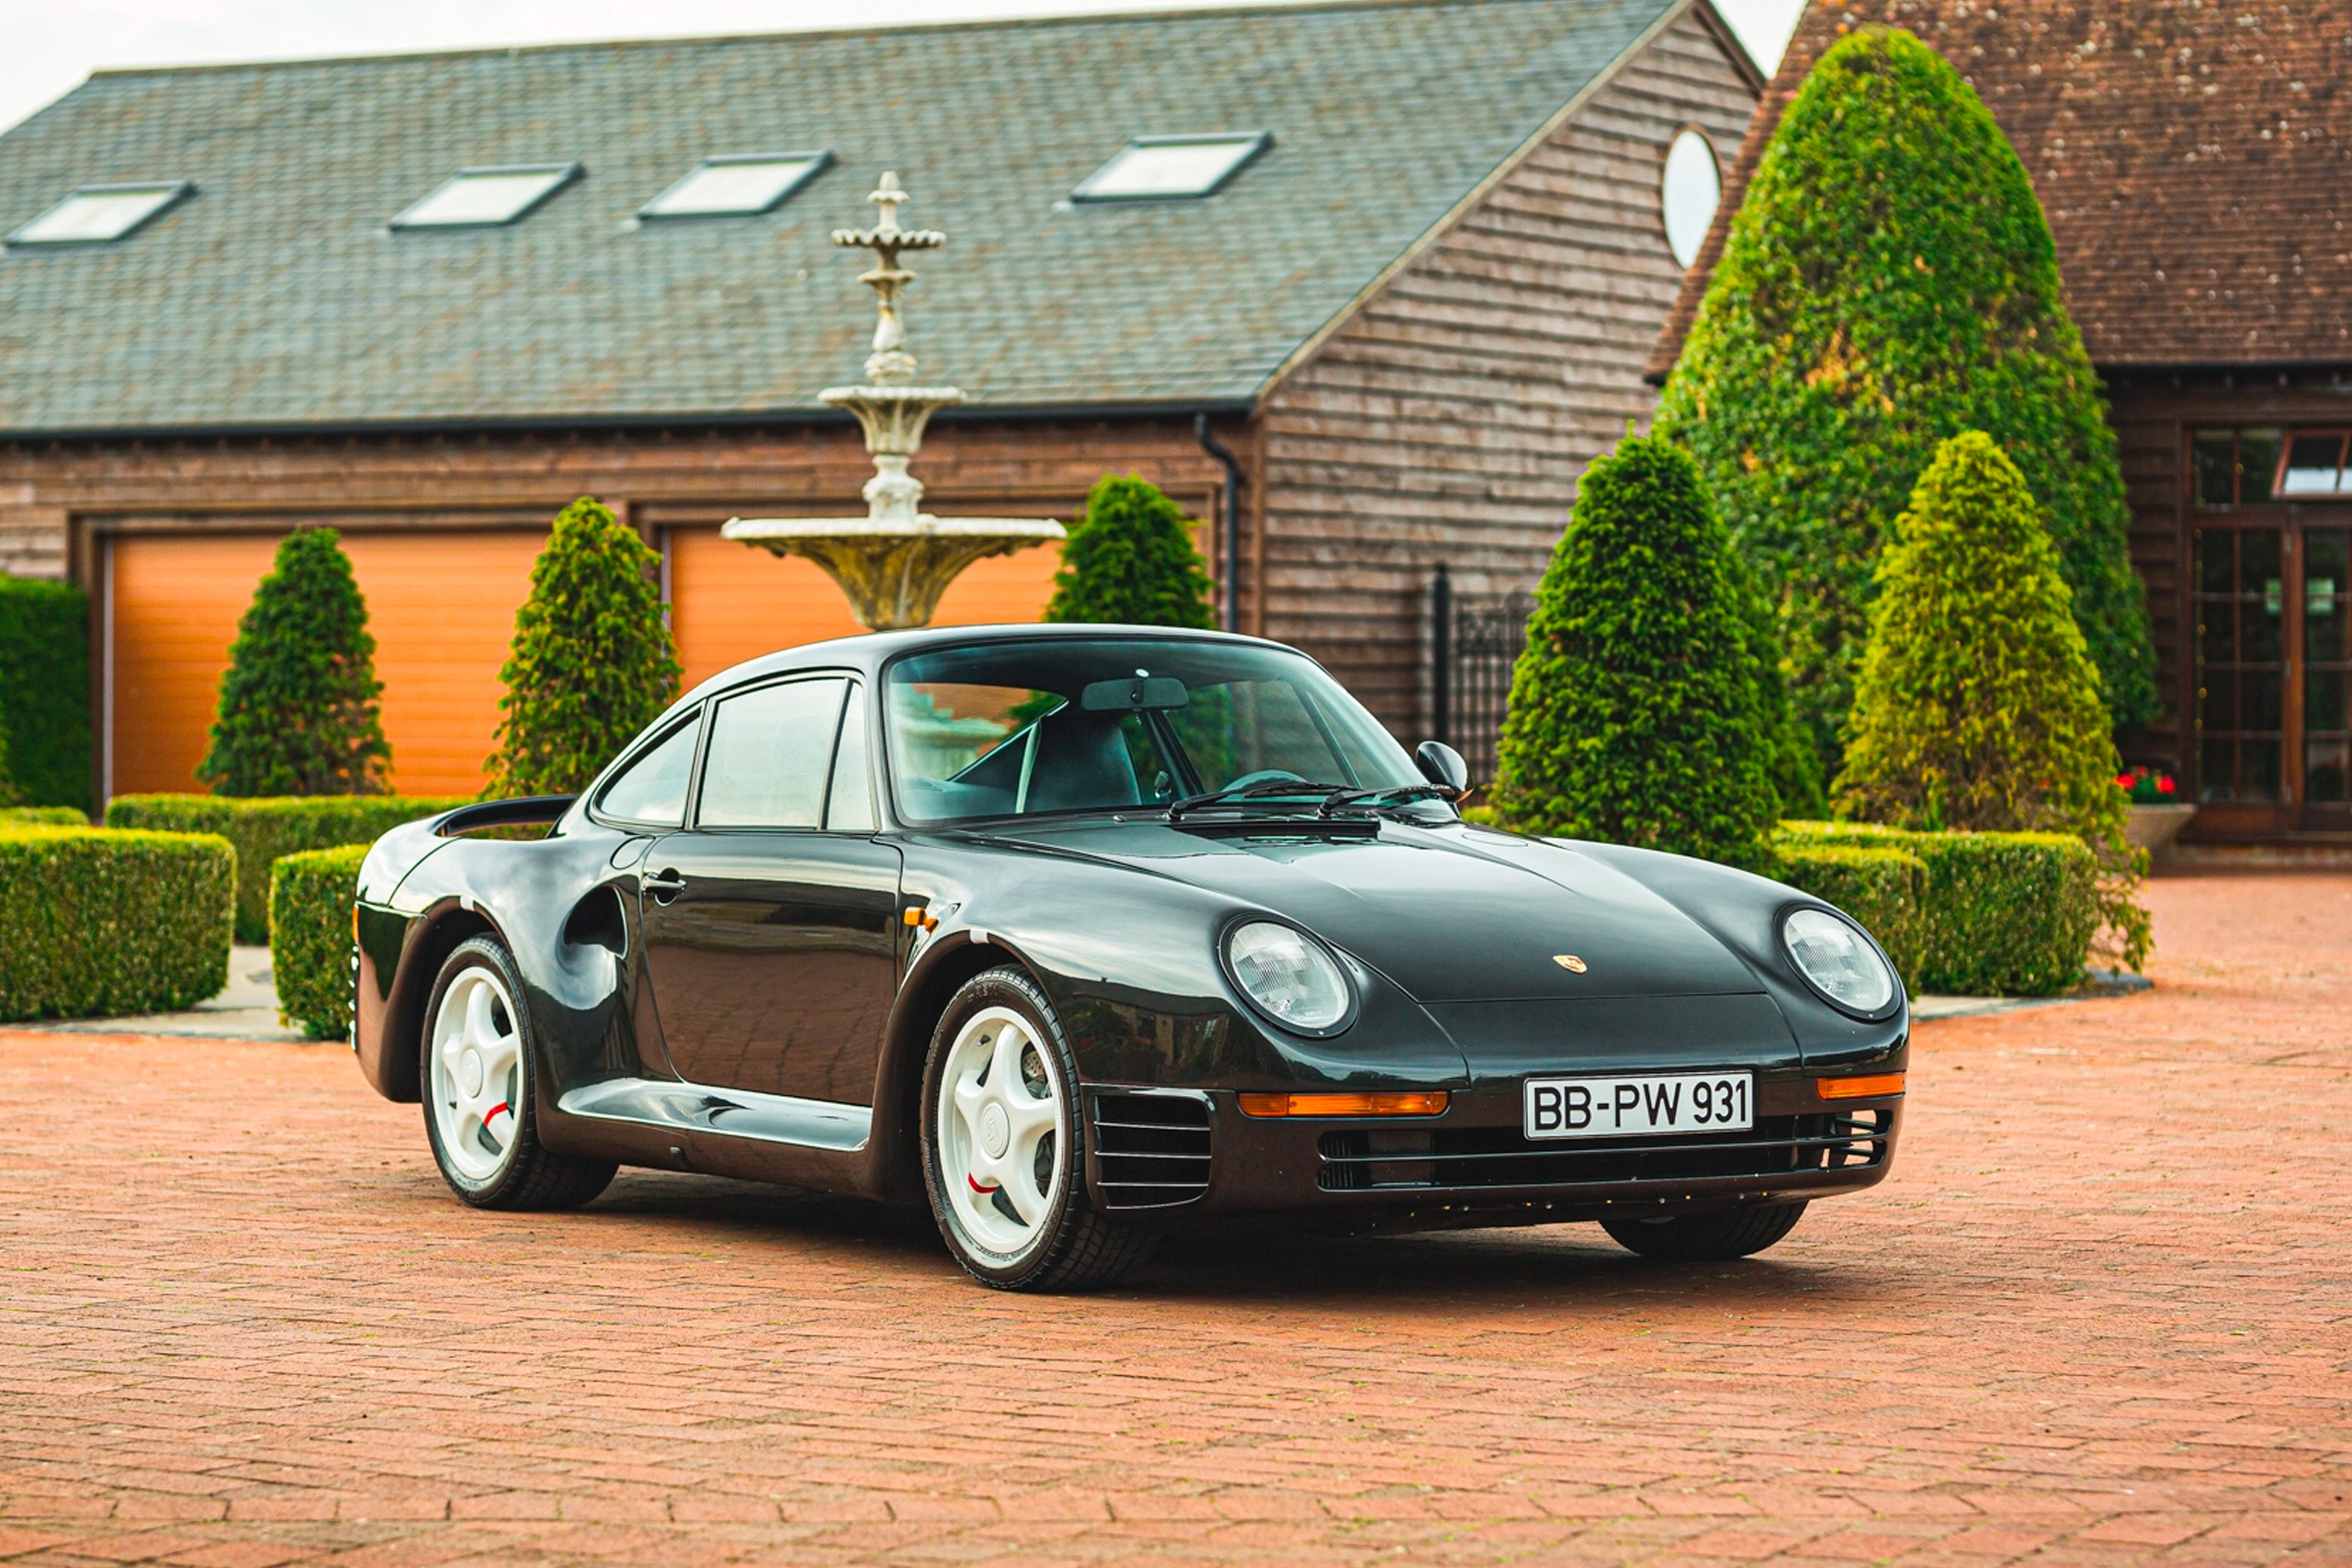 Продается редчайший Porsche 911 на максималках 80-х годов